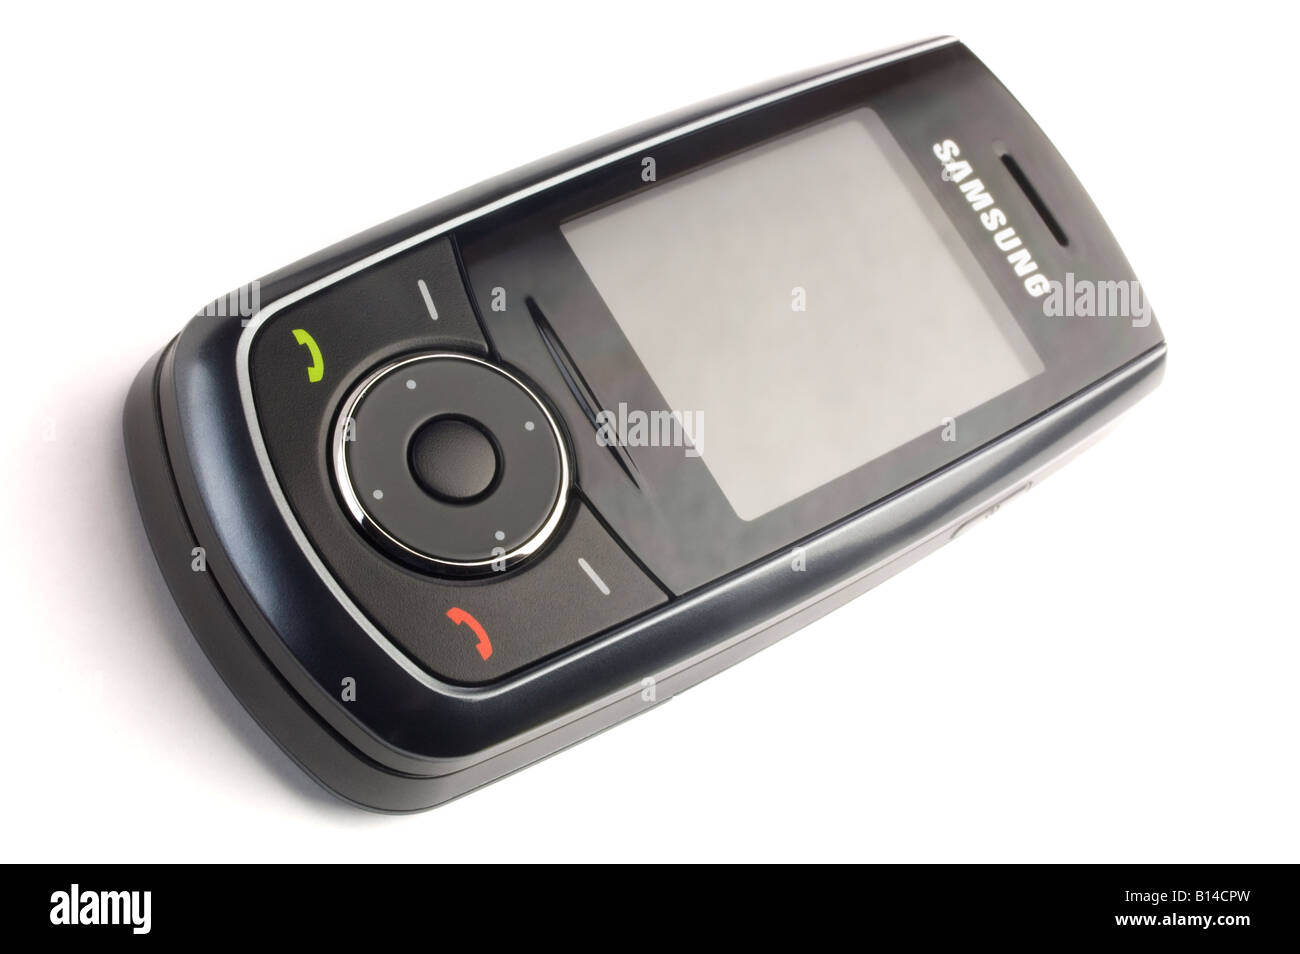 Samsung moderno modello di telefono cellulare Samsung SGH M600 isolati su sfondo bianco Foto Stock